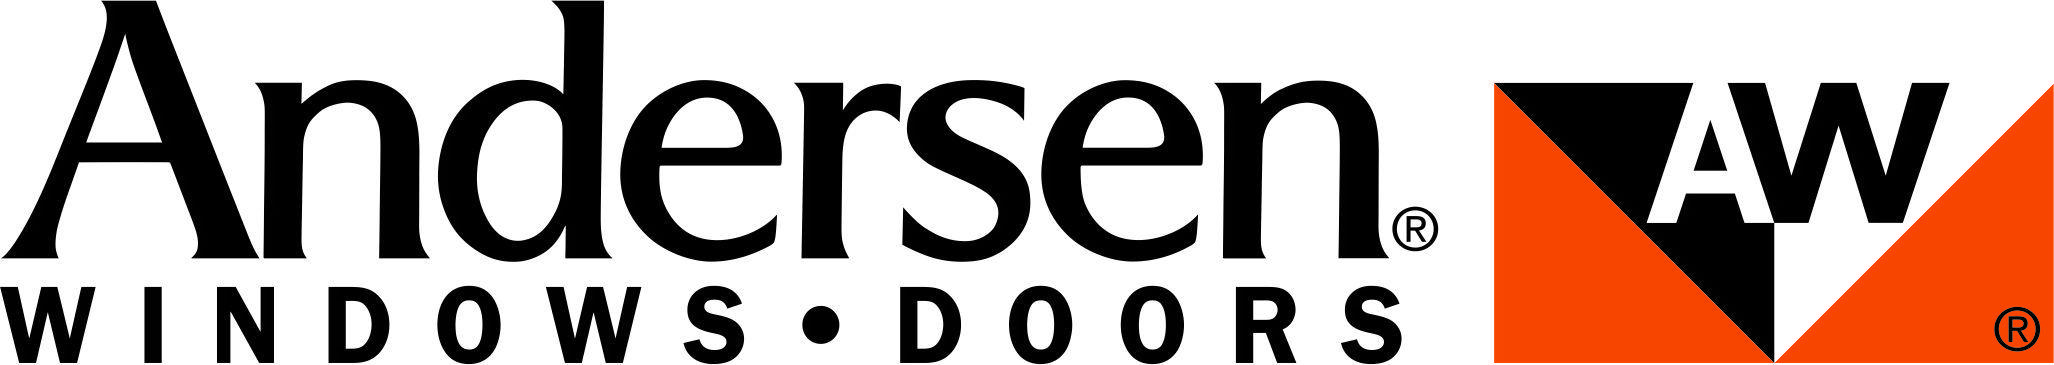 Andersen Logo - Home - Andersen Windows Doors